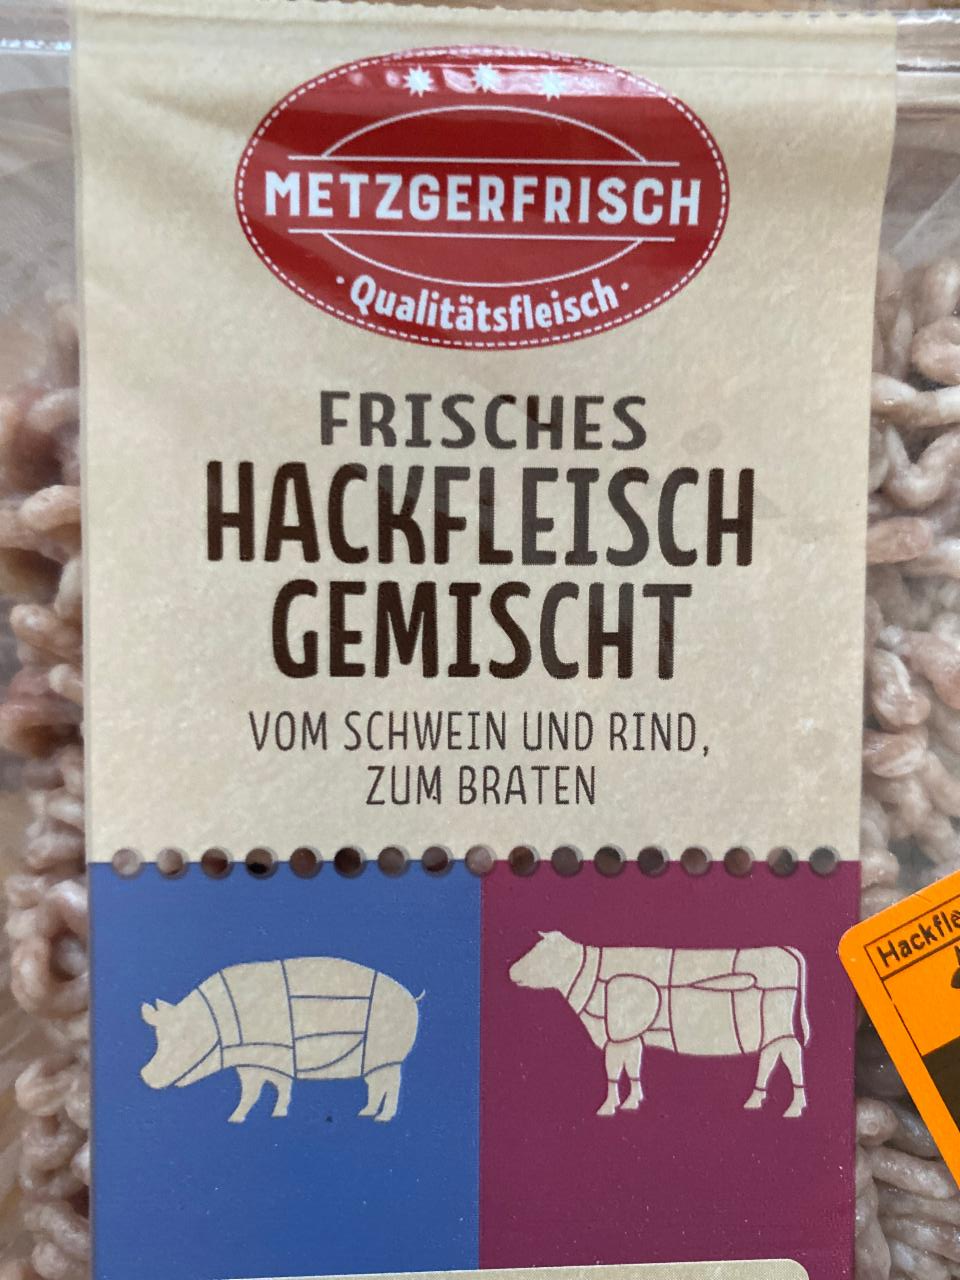 nutriční a vom Metzgerfrisch braten Gemischt Rind Schwein hodnoty kalorie, zum und Hackfleisch kJ - Frisches